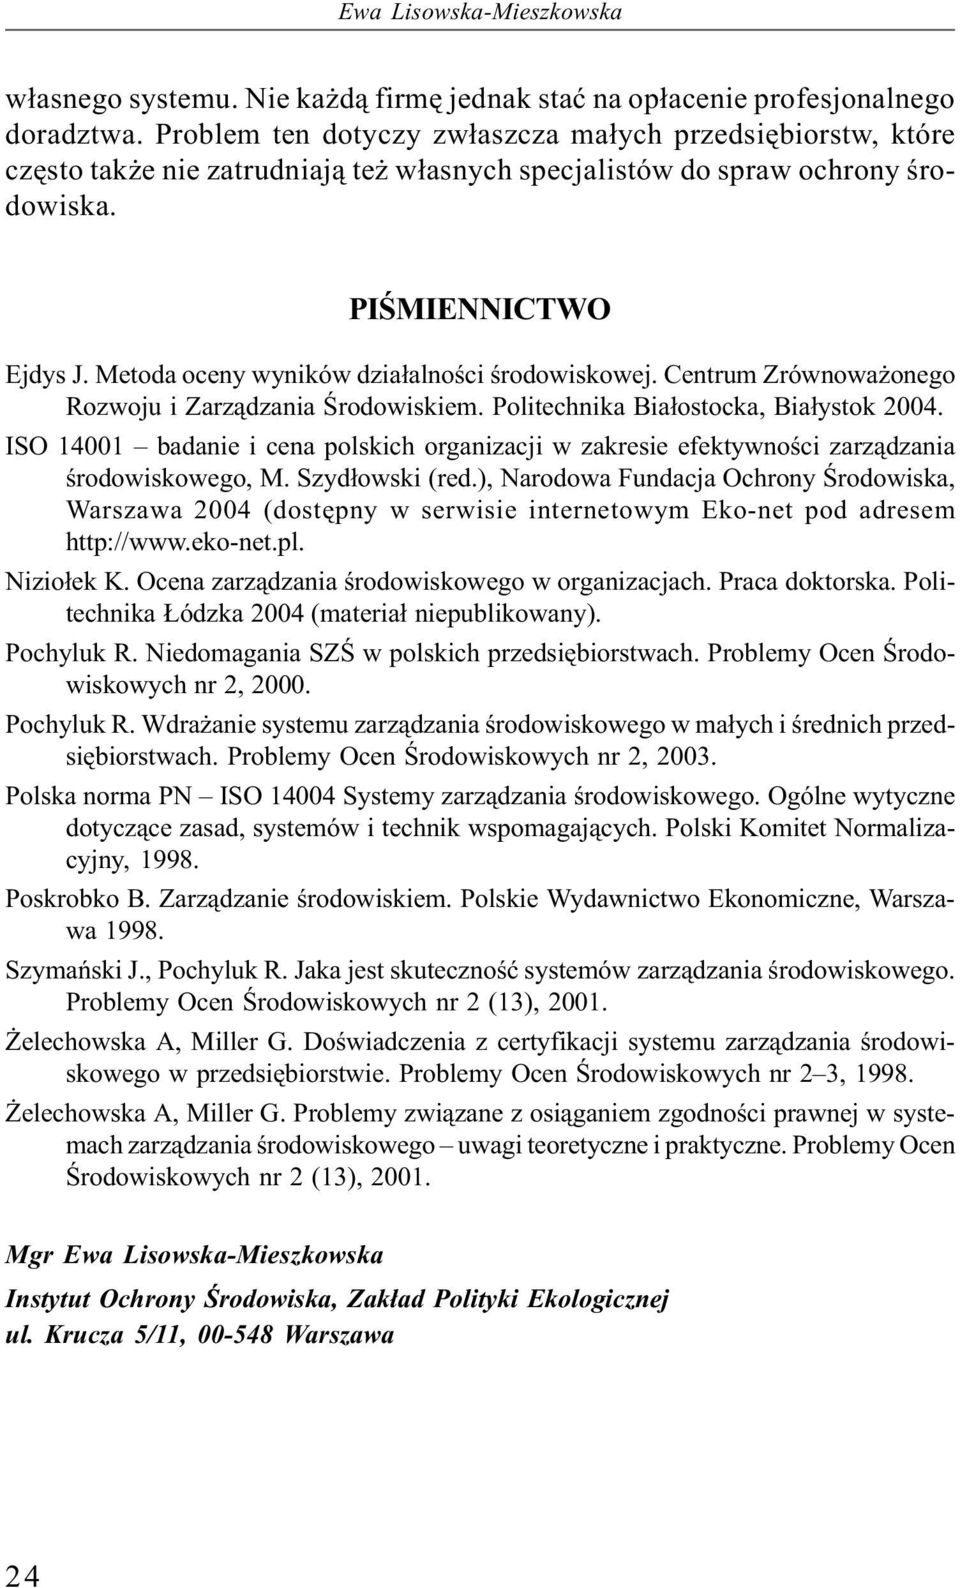 Metoda oceny wyników działalności środowiskowej. Centrum Zrównoważonego Rozwoju i Zarządzania Środowiskiem. Politechnika Białostocka, Białystok 2004.